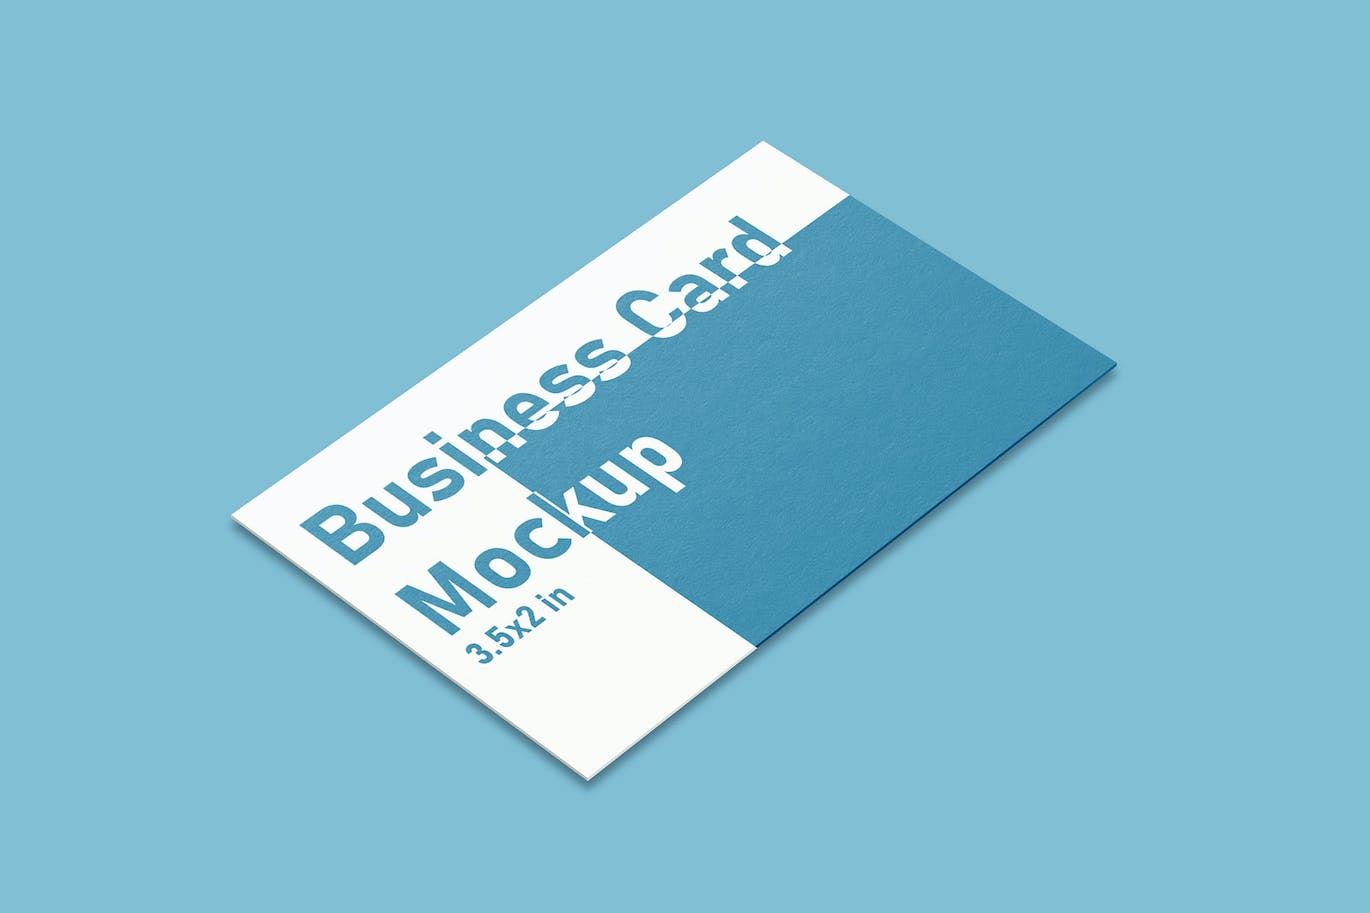 商业企业品牌展示名片样机素材 Business Card Mockups 样机素材 第1张